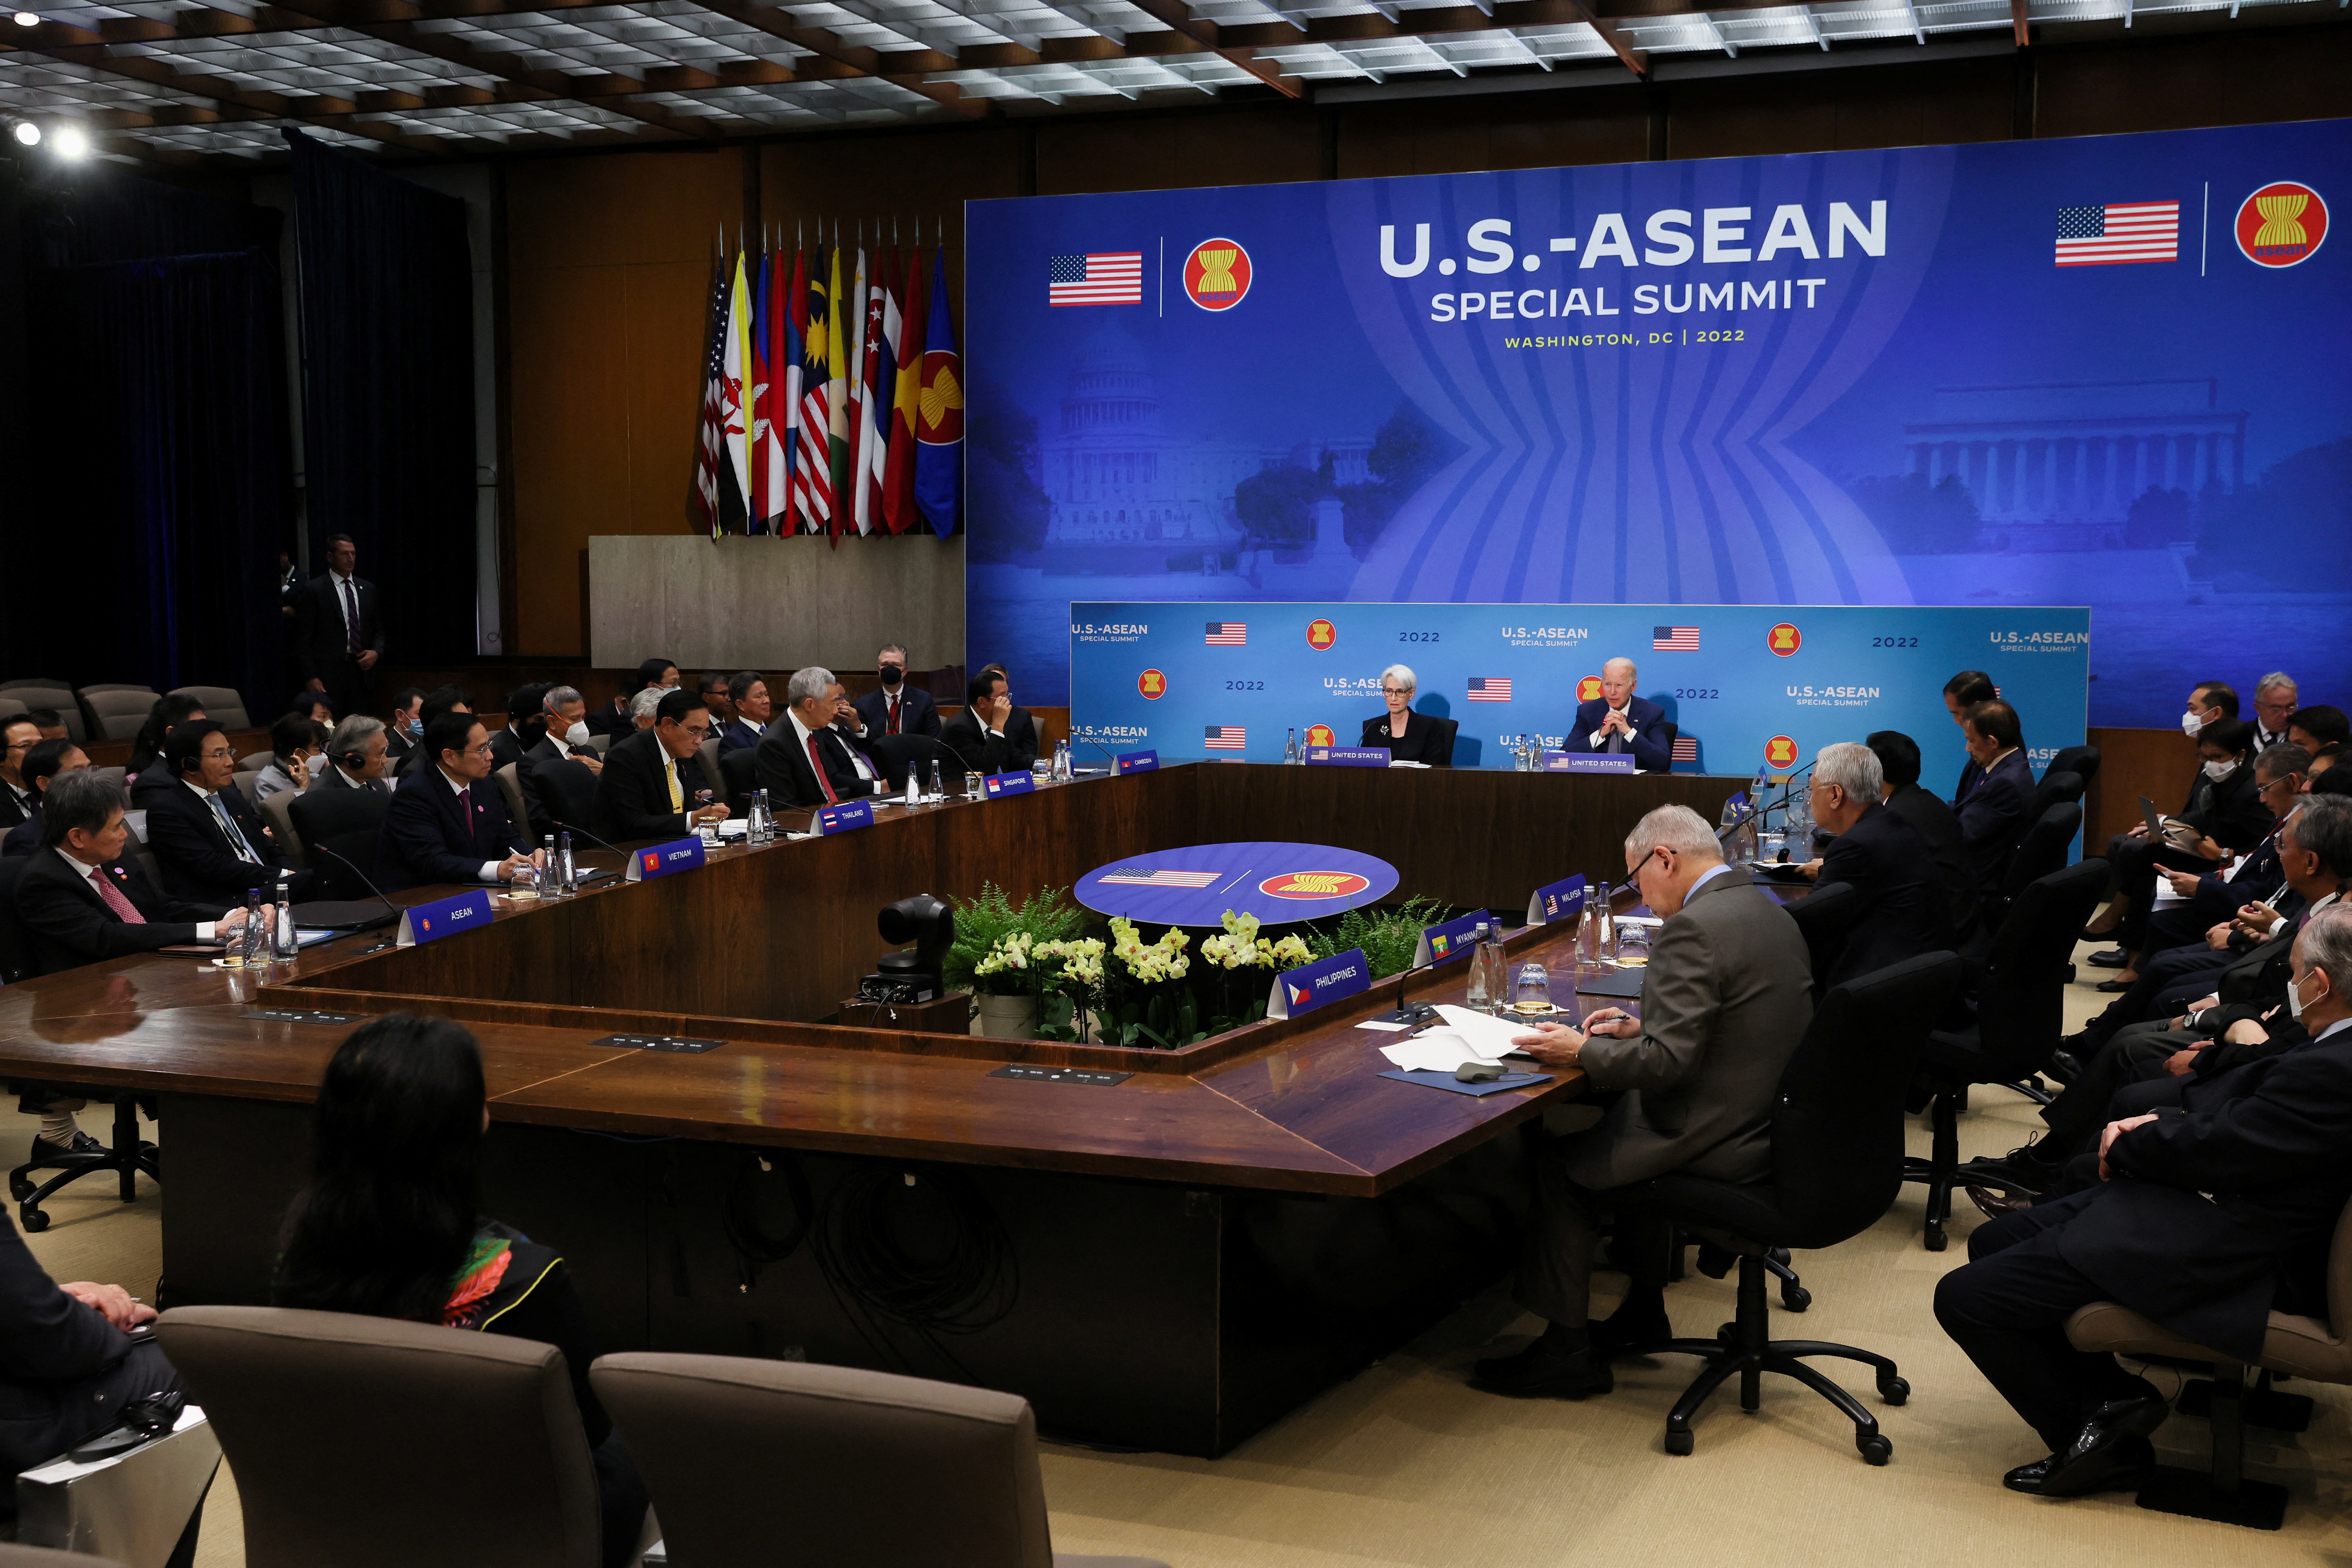 EEUU manifestó su compromiso con los países del sudeste asiático por generaciones